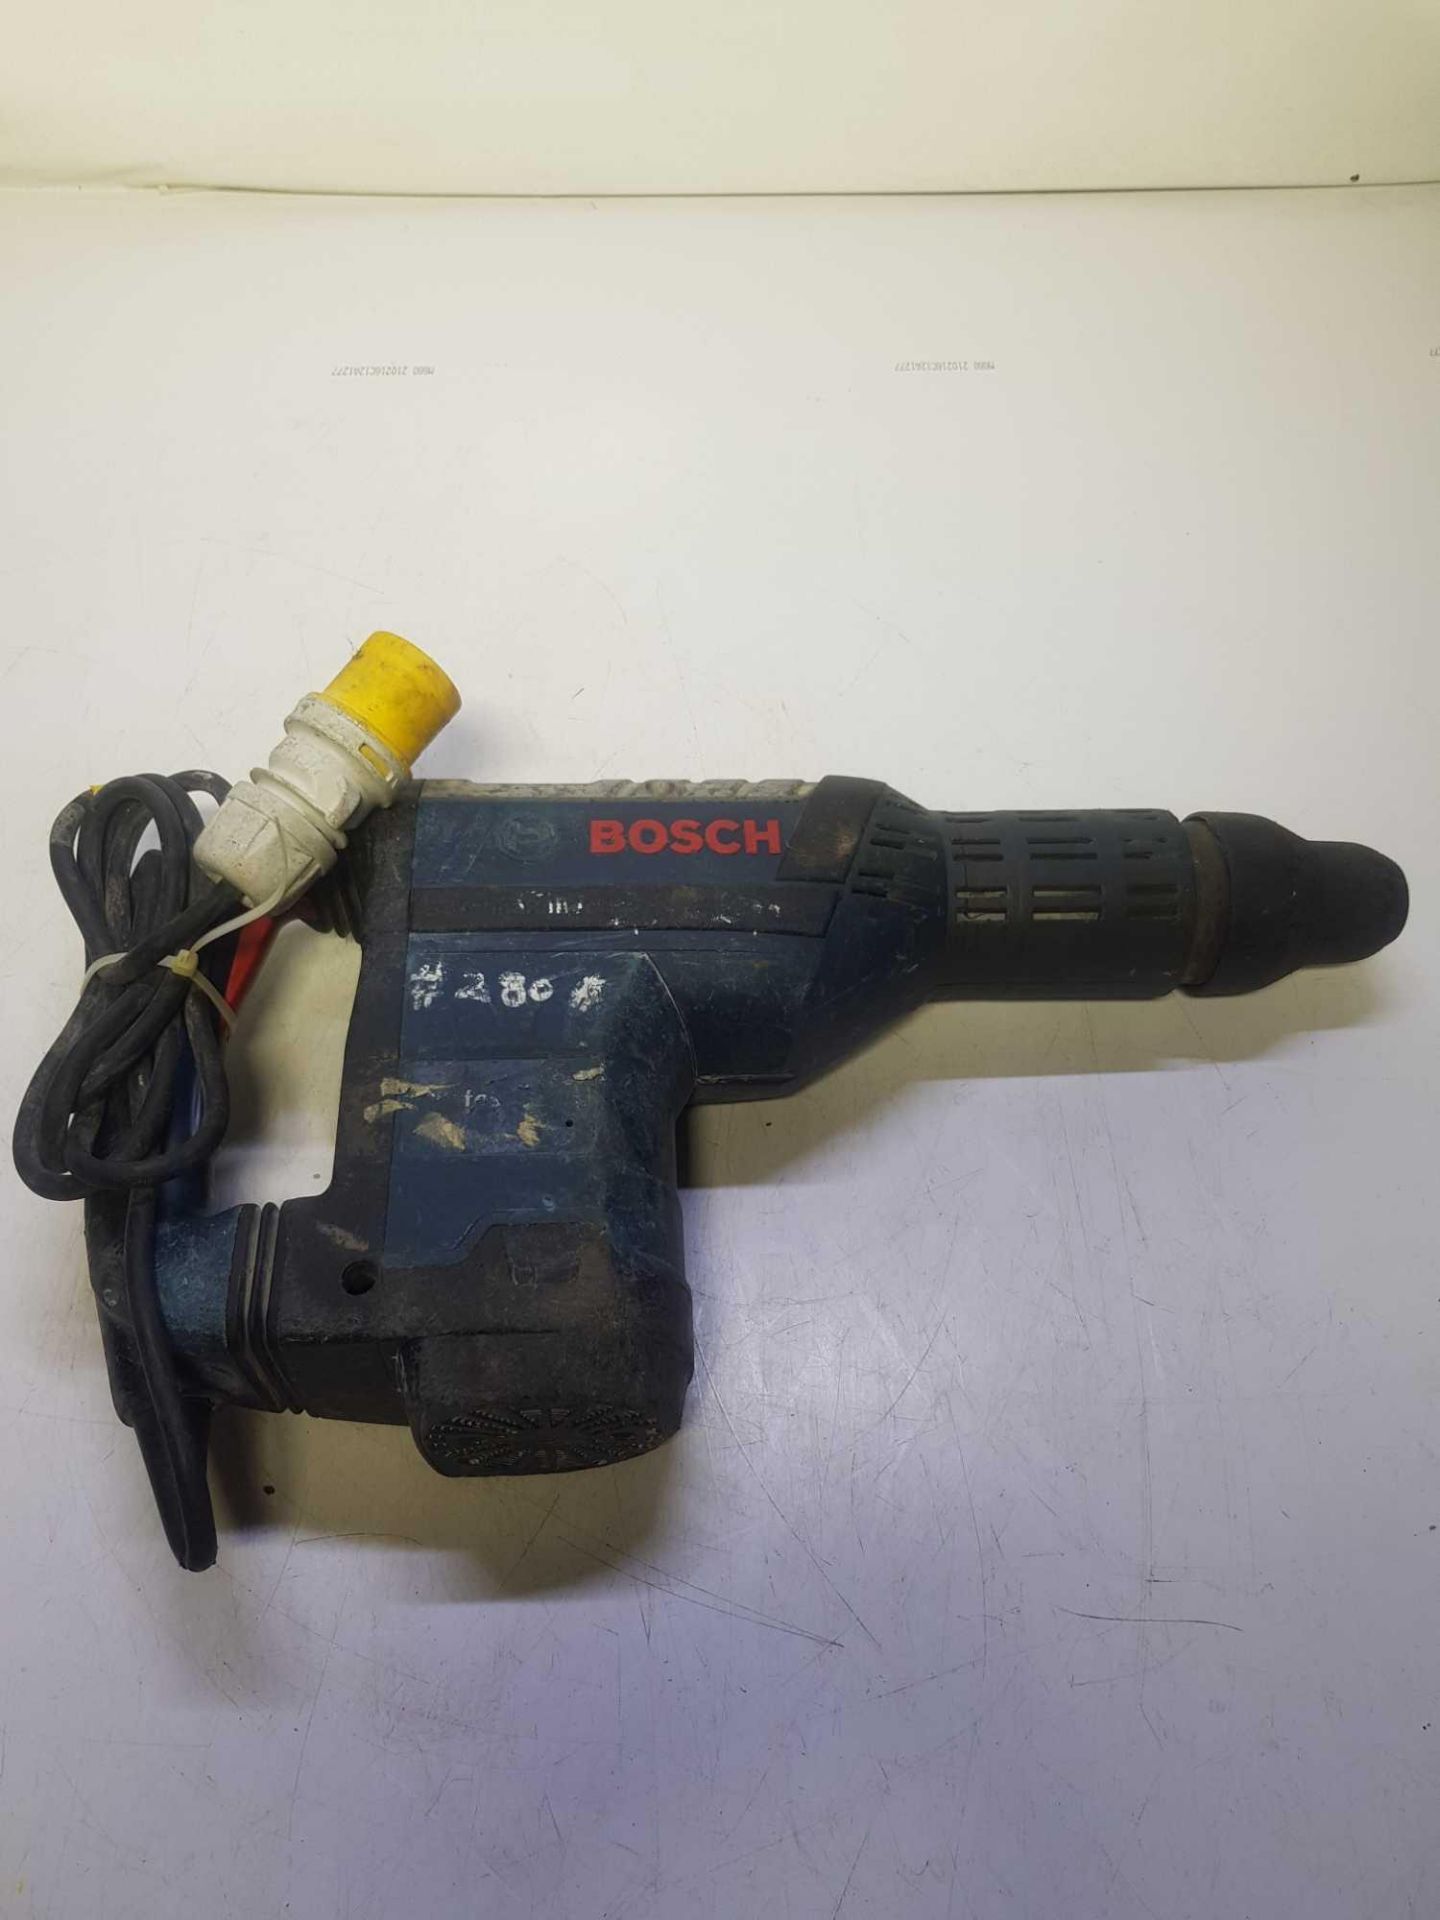 Bosch 110v hammer drill